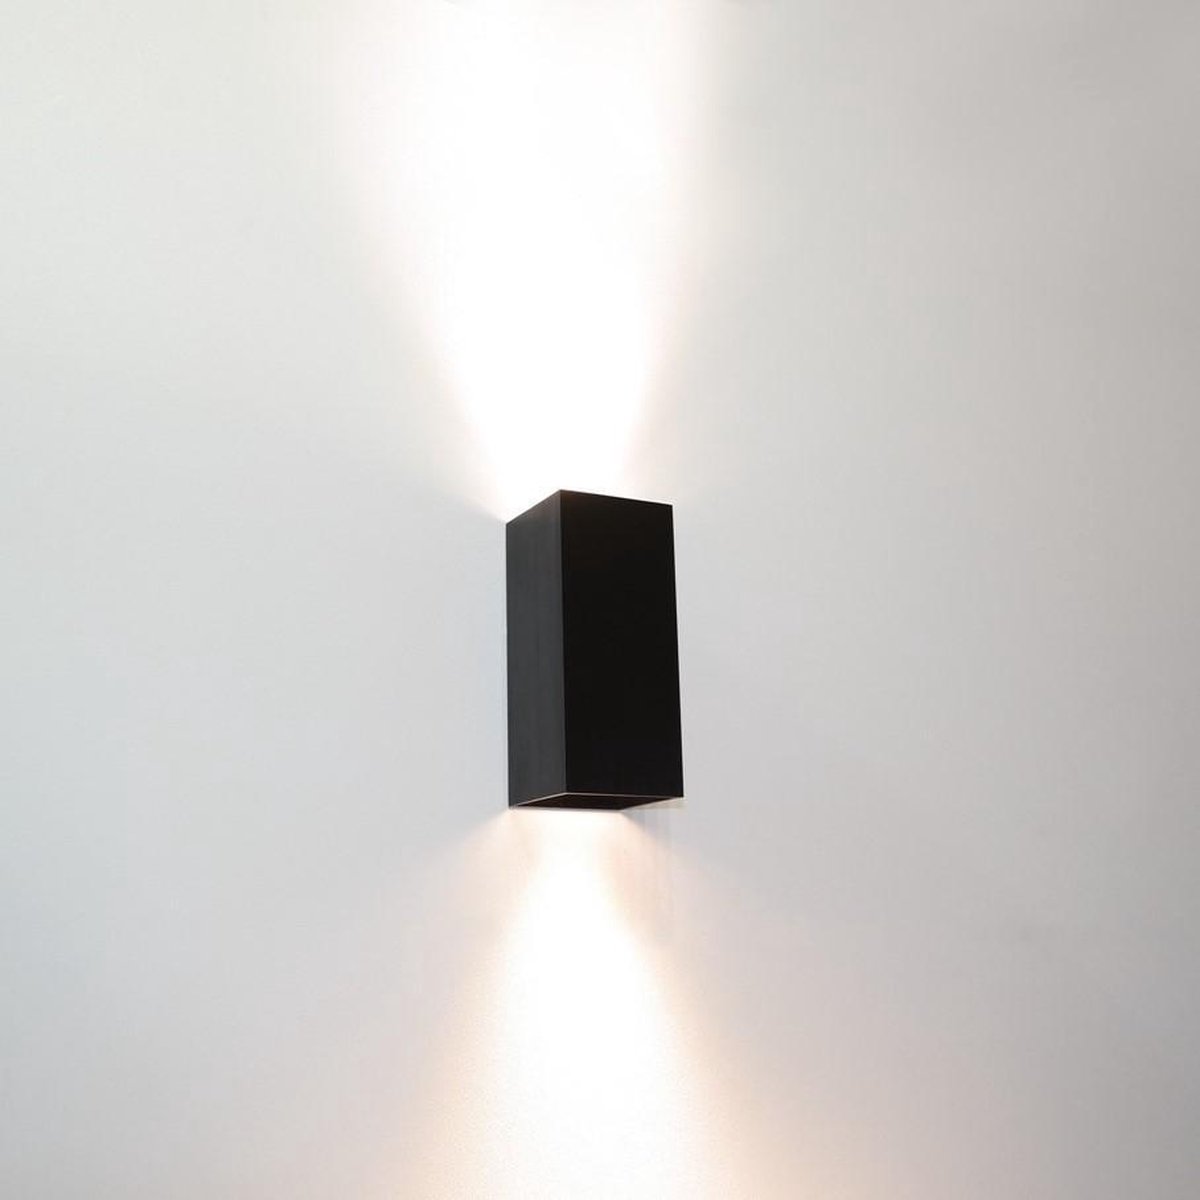 Wandlamp Dante 2 Zwart - 6,6x6,6x15,4cm - 2x GU10 LED 4,8W 2700K 355lm - IP20 - Dimbaar > wandlamp zwart | wandlamp binnen zwart | wandlamp hal zwart | wandlamp woonkamer zwart | wandlamp slaapkamer zwart | led lamp zwart | sfeer lamp zwart